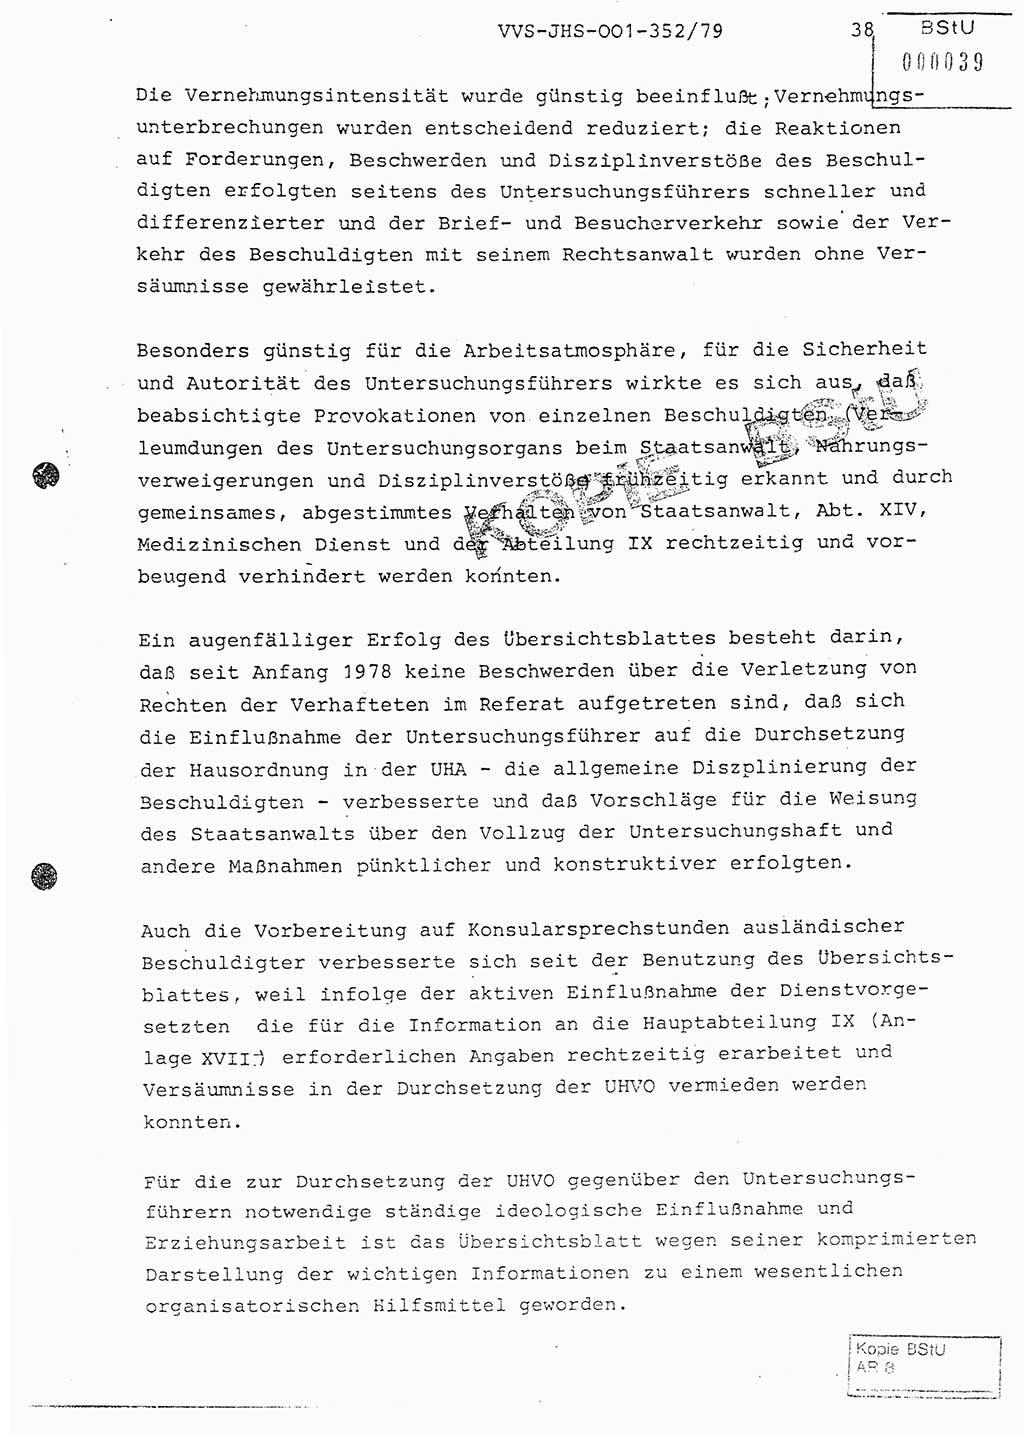 Diplomarbeit Hauptmann Peter Wittum (BV Bln. Abt. HA Ⅸ), Ministerium für Staatssicherheit (MfS) [Deutsche Demokratische Republik (DDR)], Juristische Hochschule (JHS), Vertrauliche Verschlußsache (VVS) o001-352/79, Potsdam 1979, Seite 38 (Dipl.-Arb. MfS DDR JHS VVS o001-352/79 1979, S. 38)